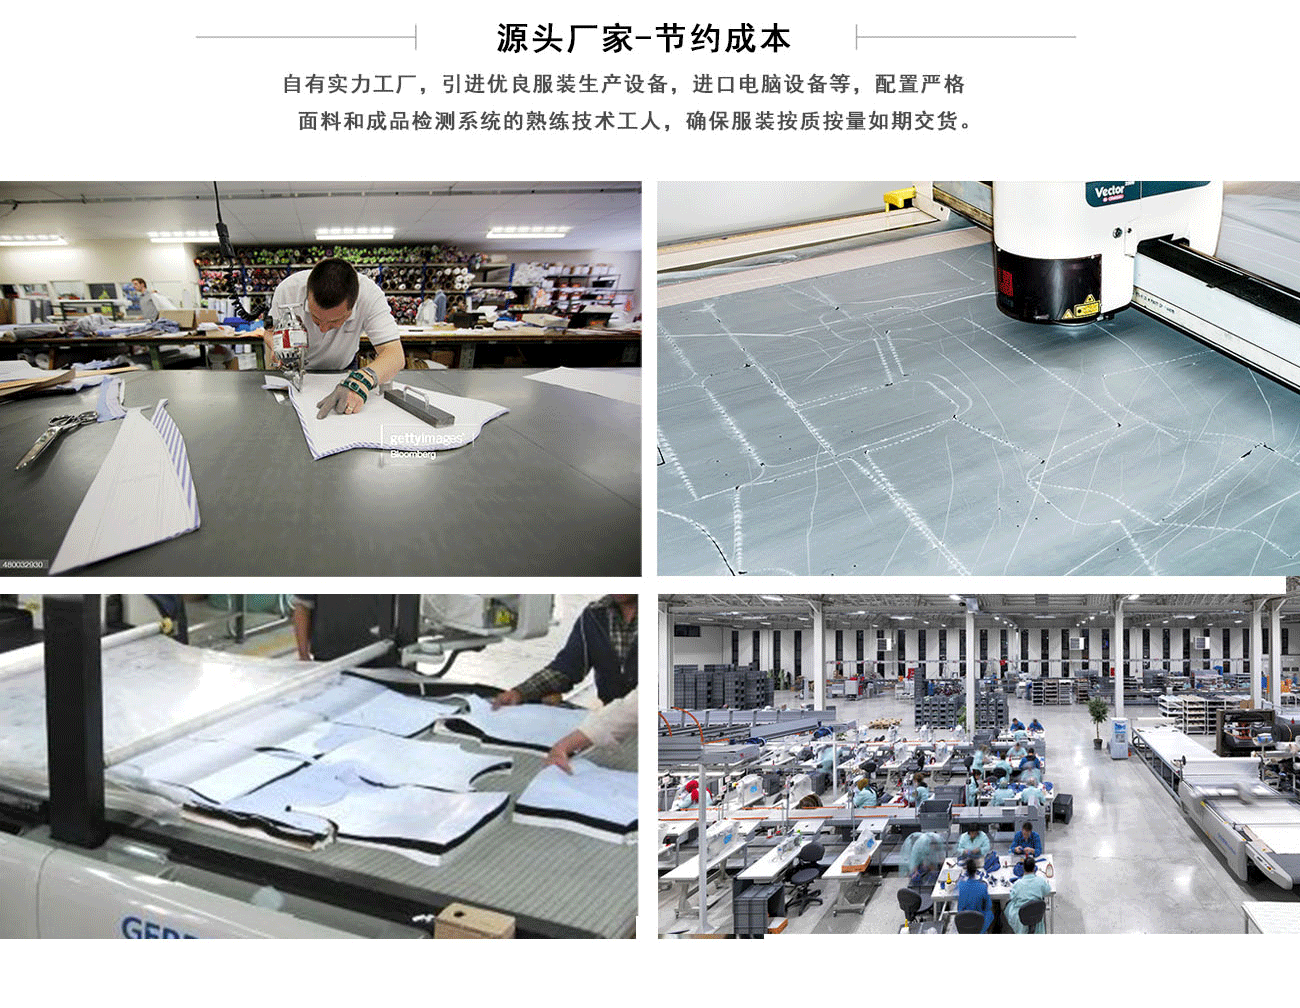 男款纯棉夹克厂家工厂实景、一线工人作业图以及我们精良的生产设备和规模等